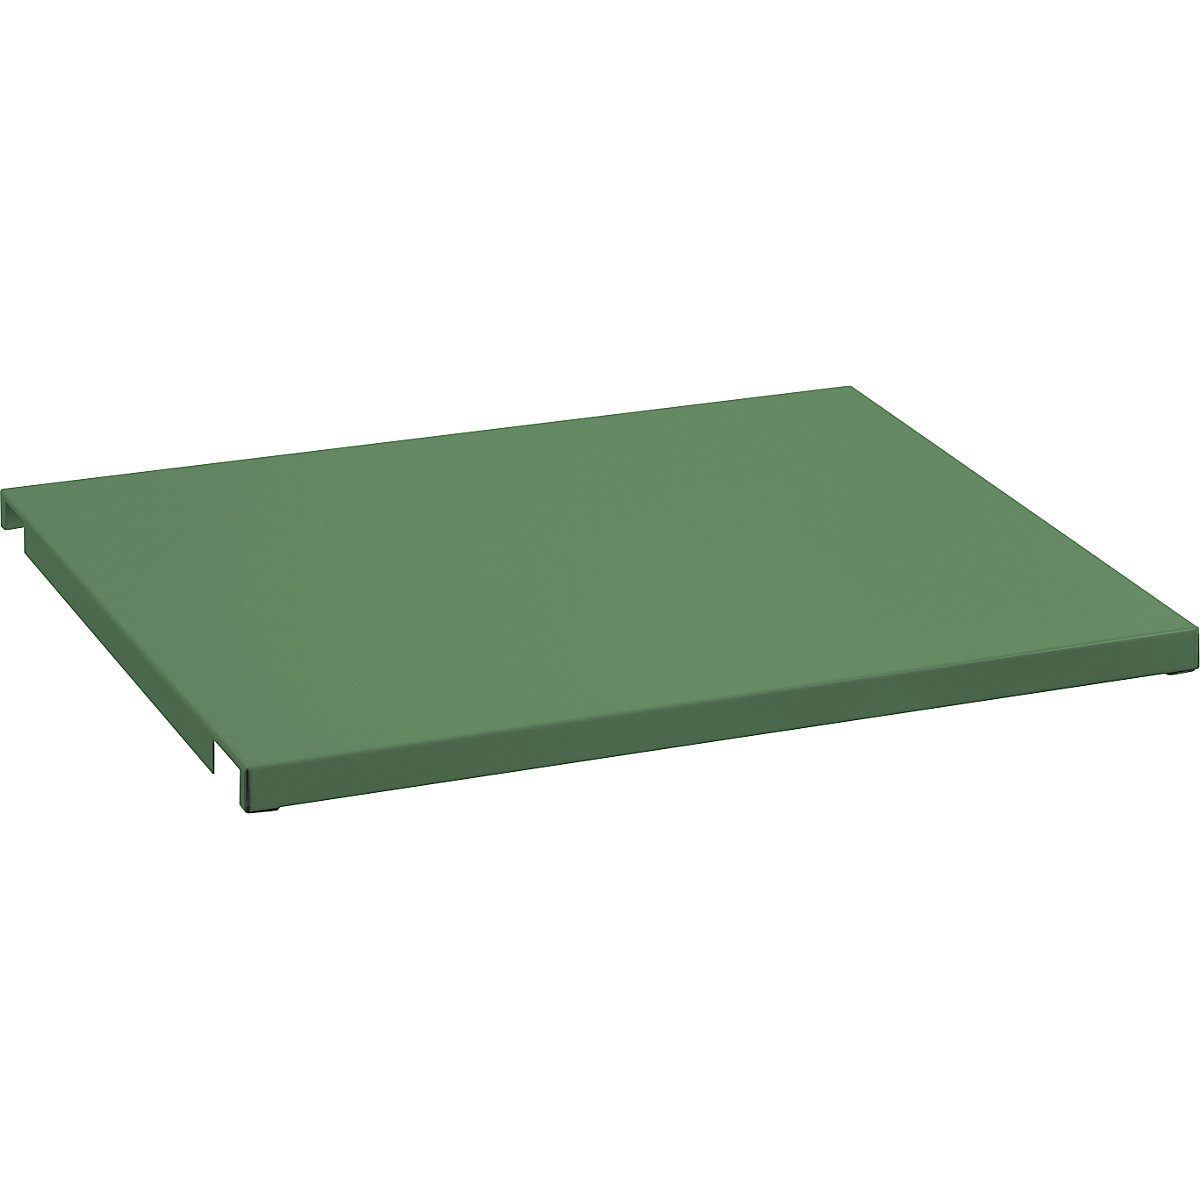 Limeni pokrov za fiksni okvir – LISTA, za ŠxD 890 x 860 mm, u rezeda zelenoj boji-3